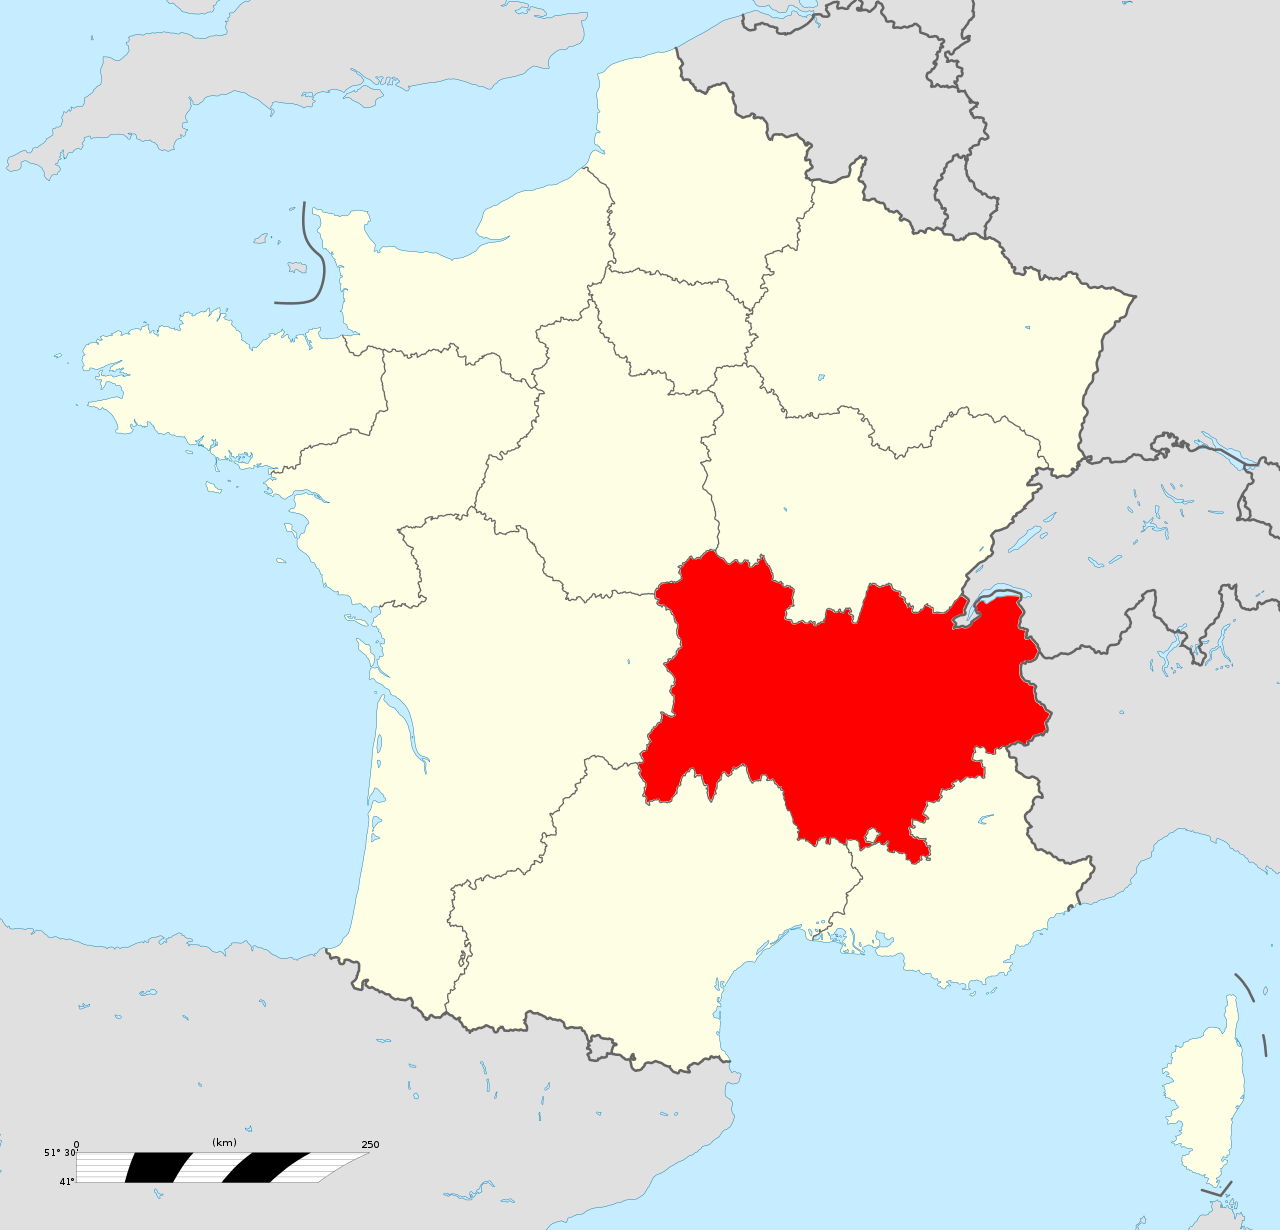 Sanatorium Hl 1 Urbex locatie in of rond de regio Auvergne-Rhône-Alpes (Ain), France